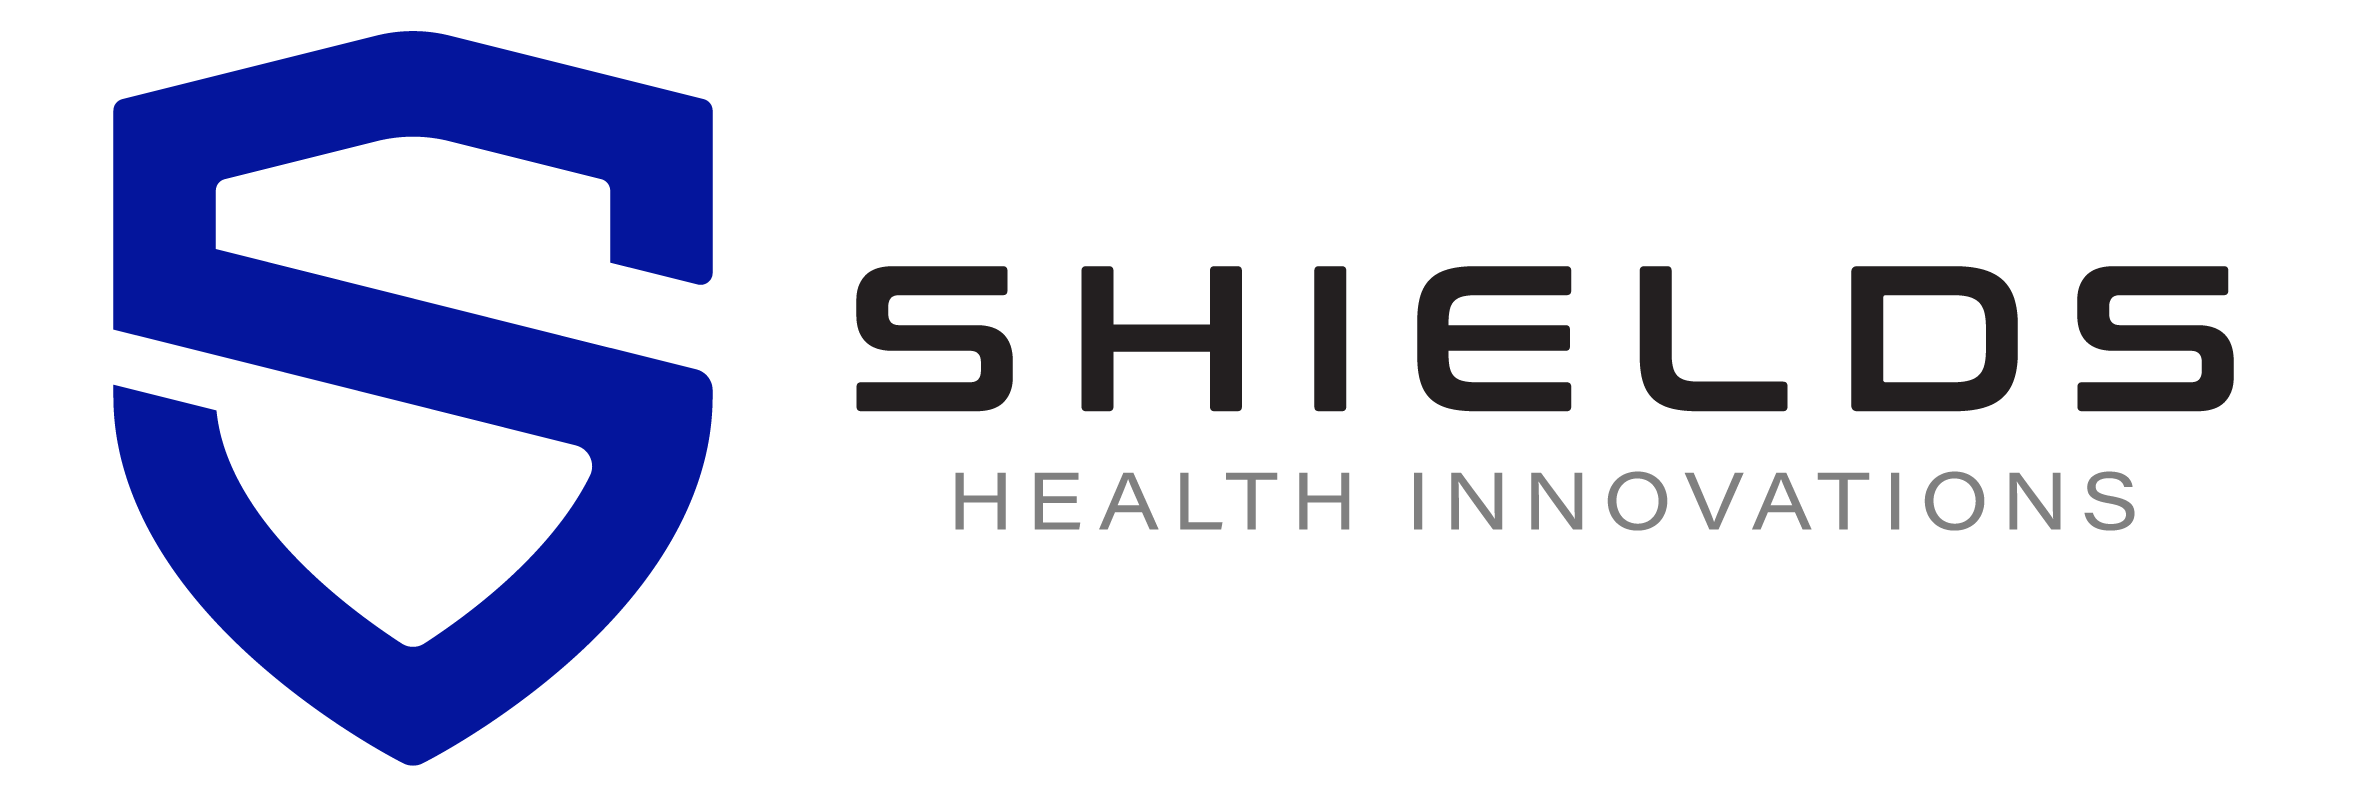 Shields Capital Logo